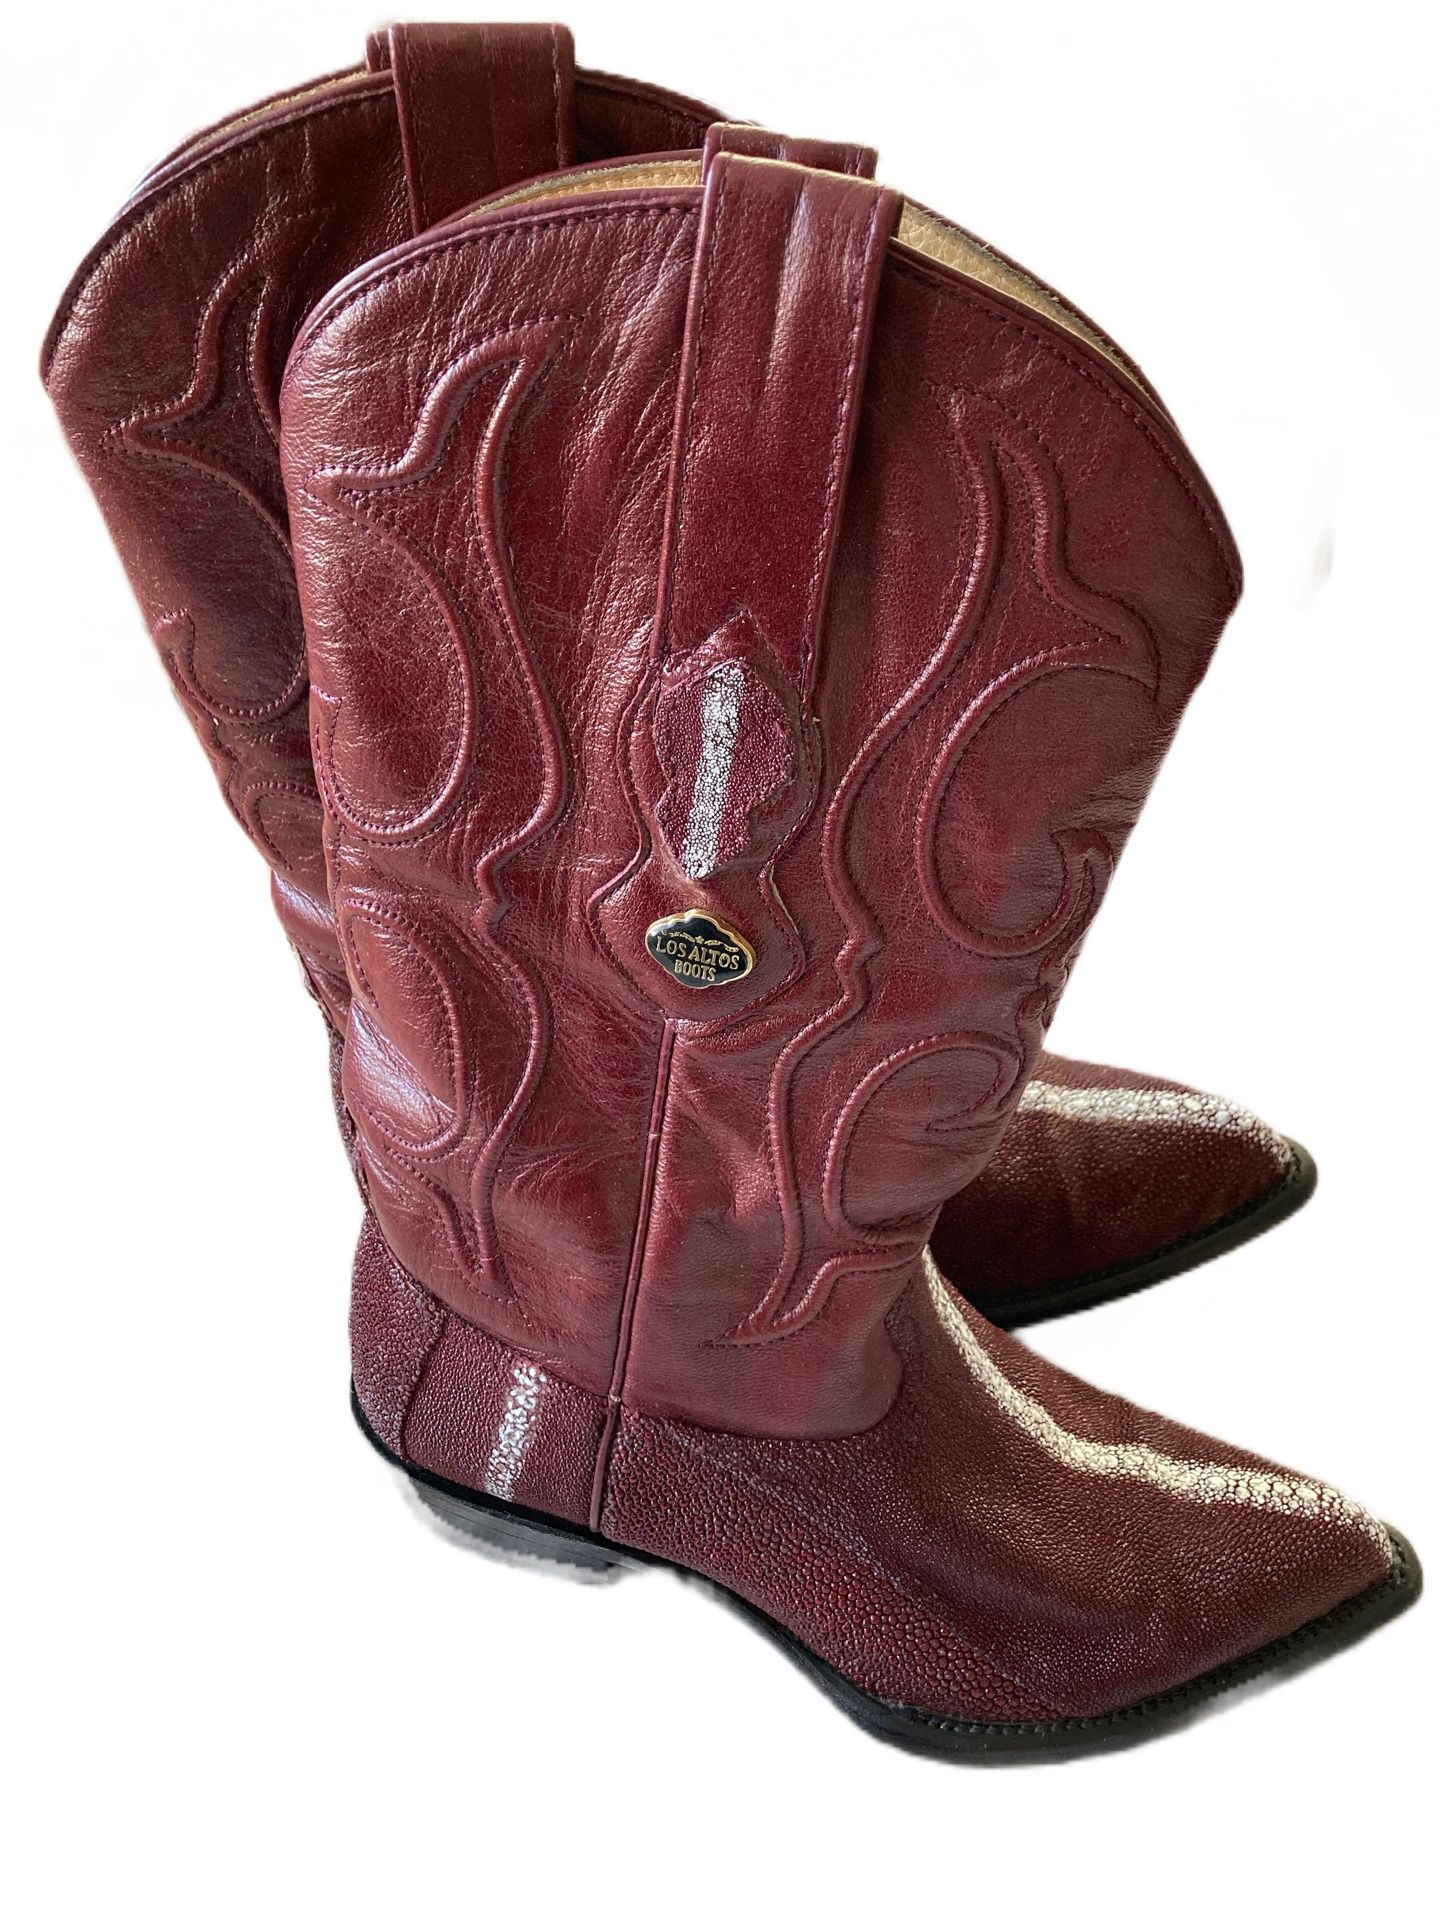 CUADRA Los Altos Boots Stingray Size 6.5 Western Cowboy Round Toe Mexico 25.5